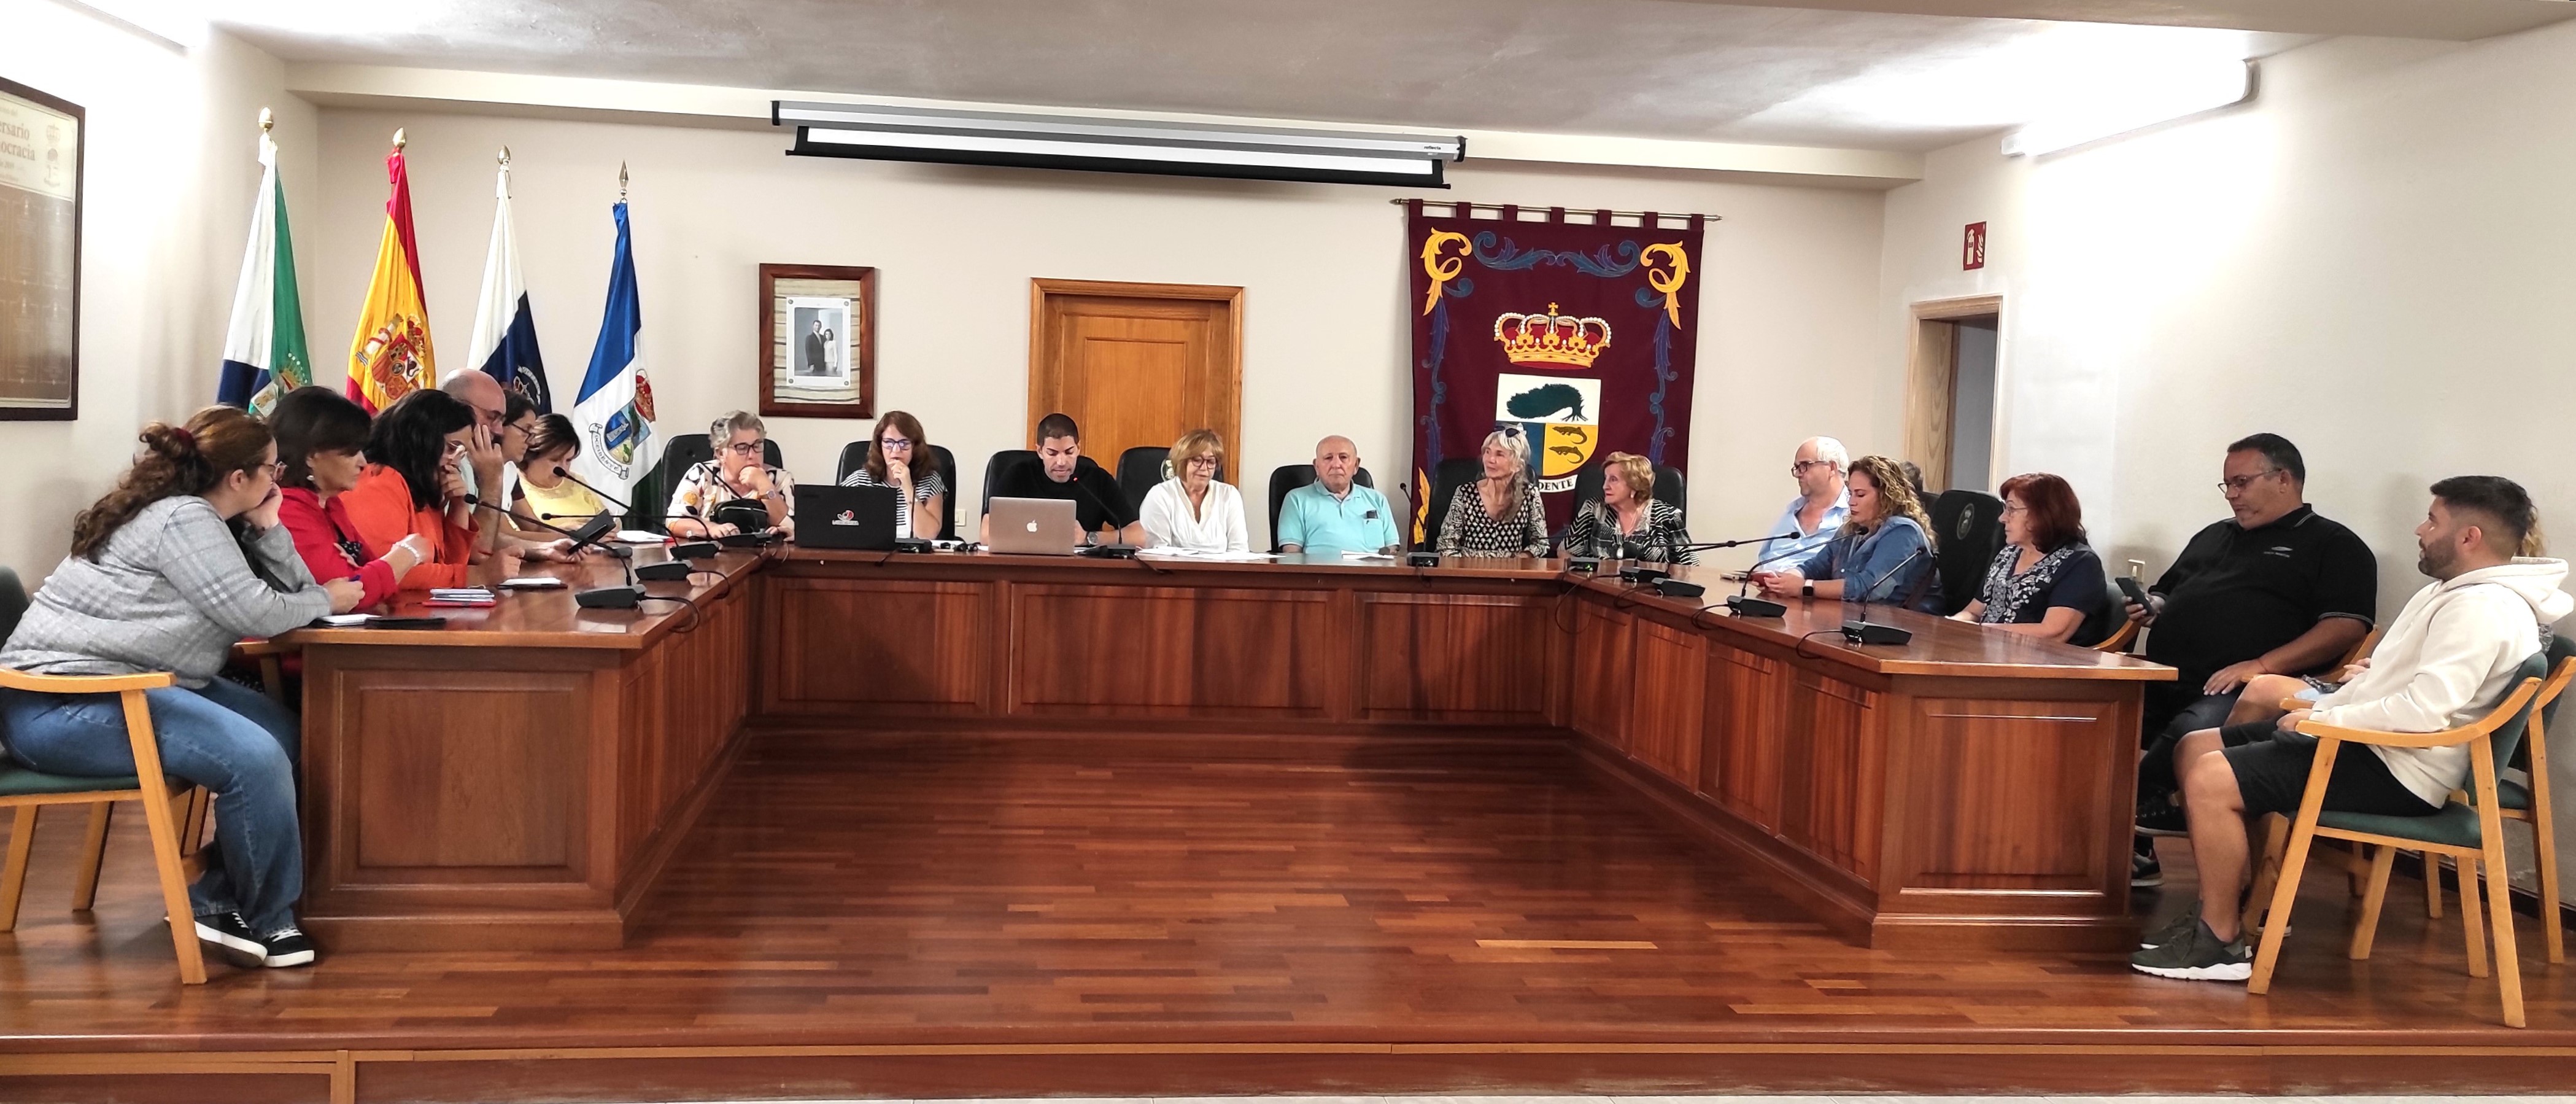 El Consejo de Participación Ciudadana del Municipio de La Frontera retoma su actividad